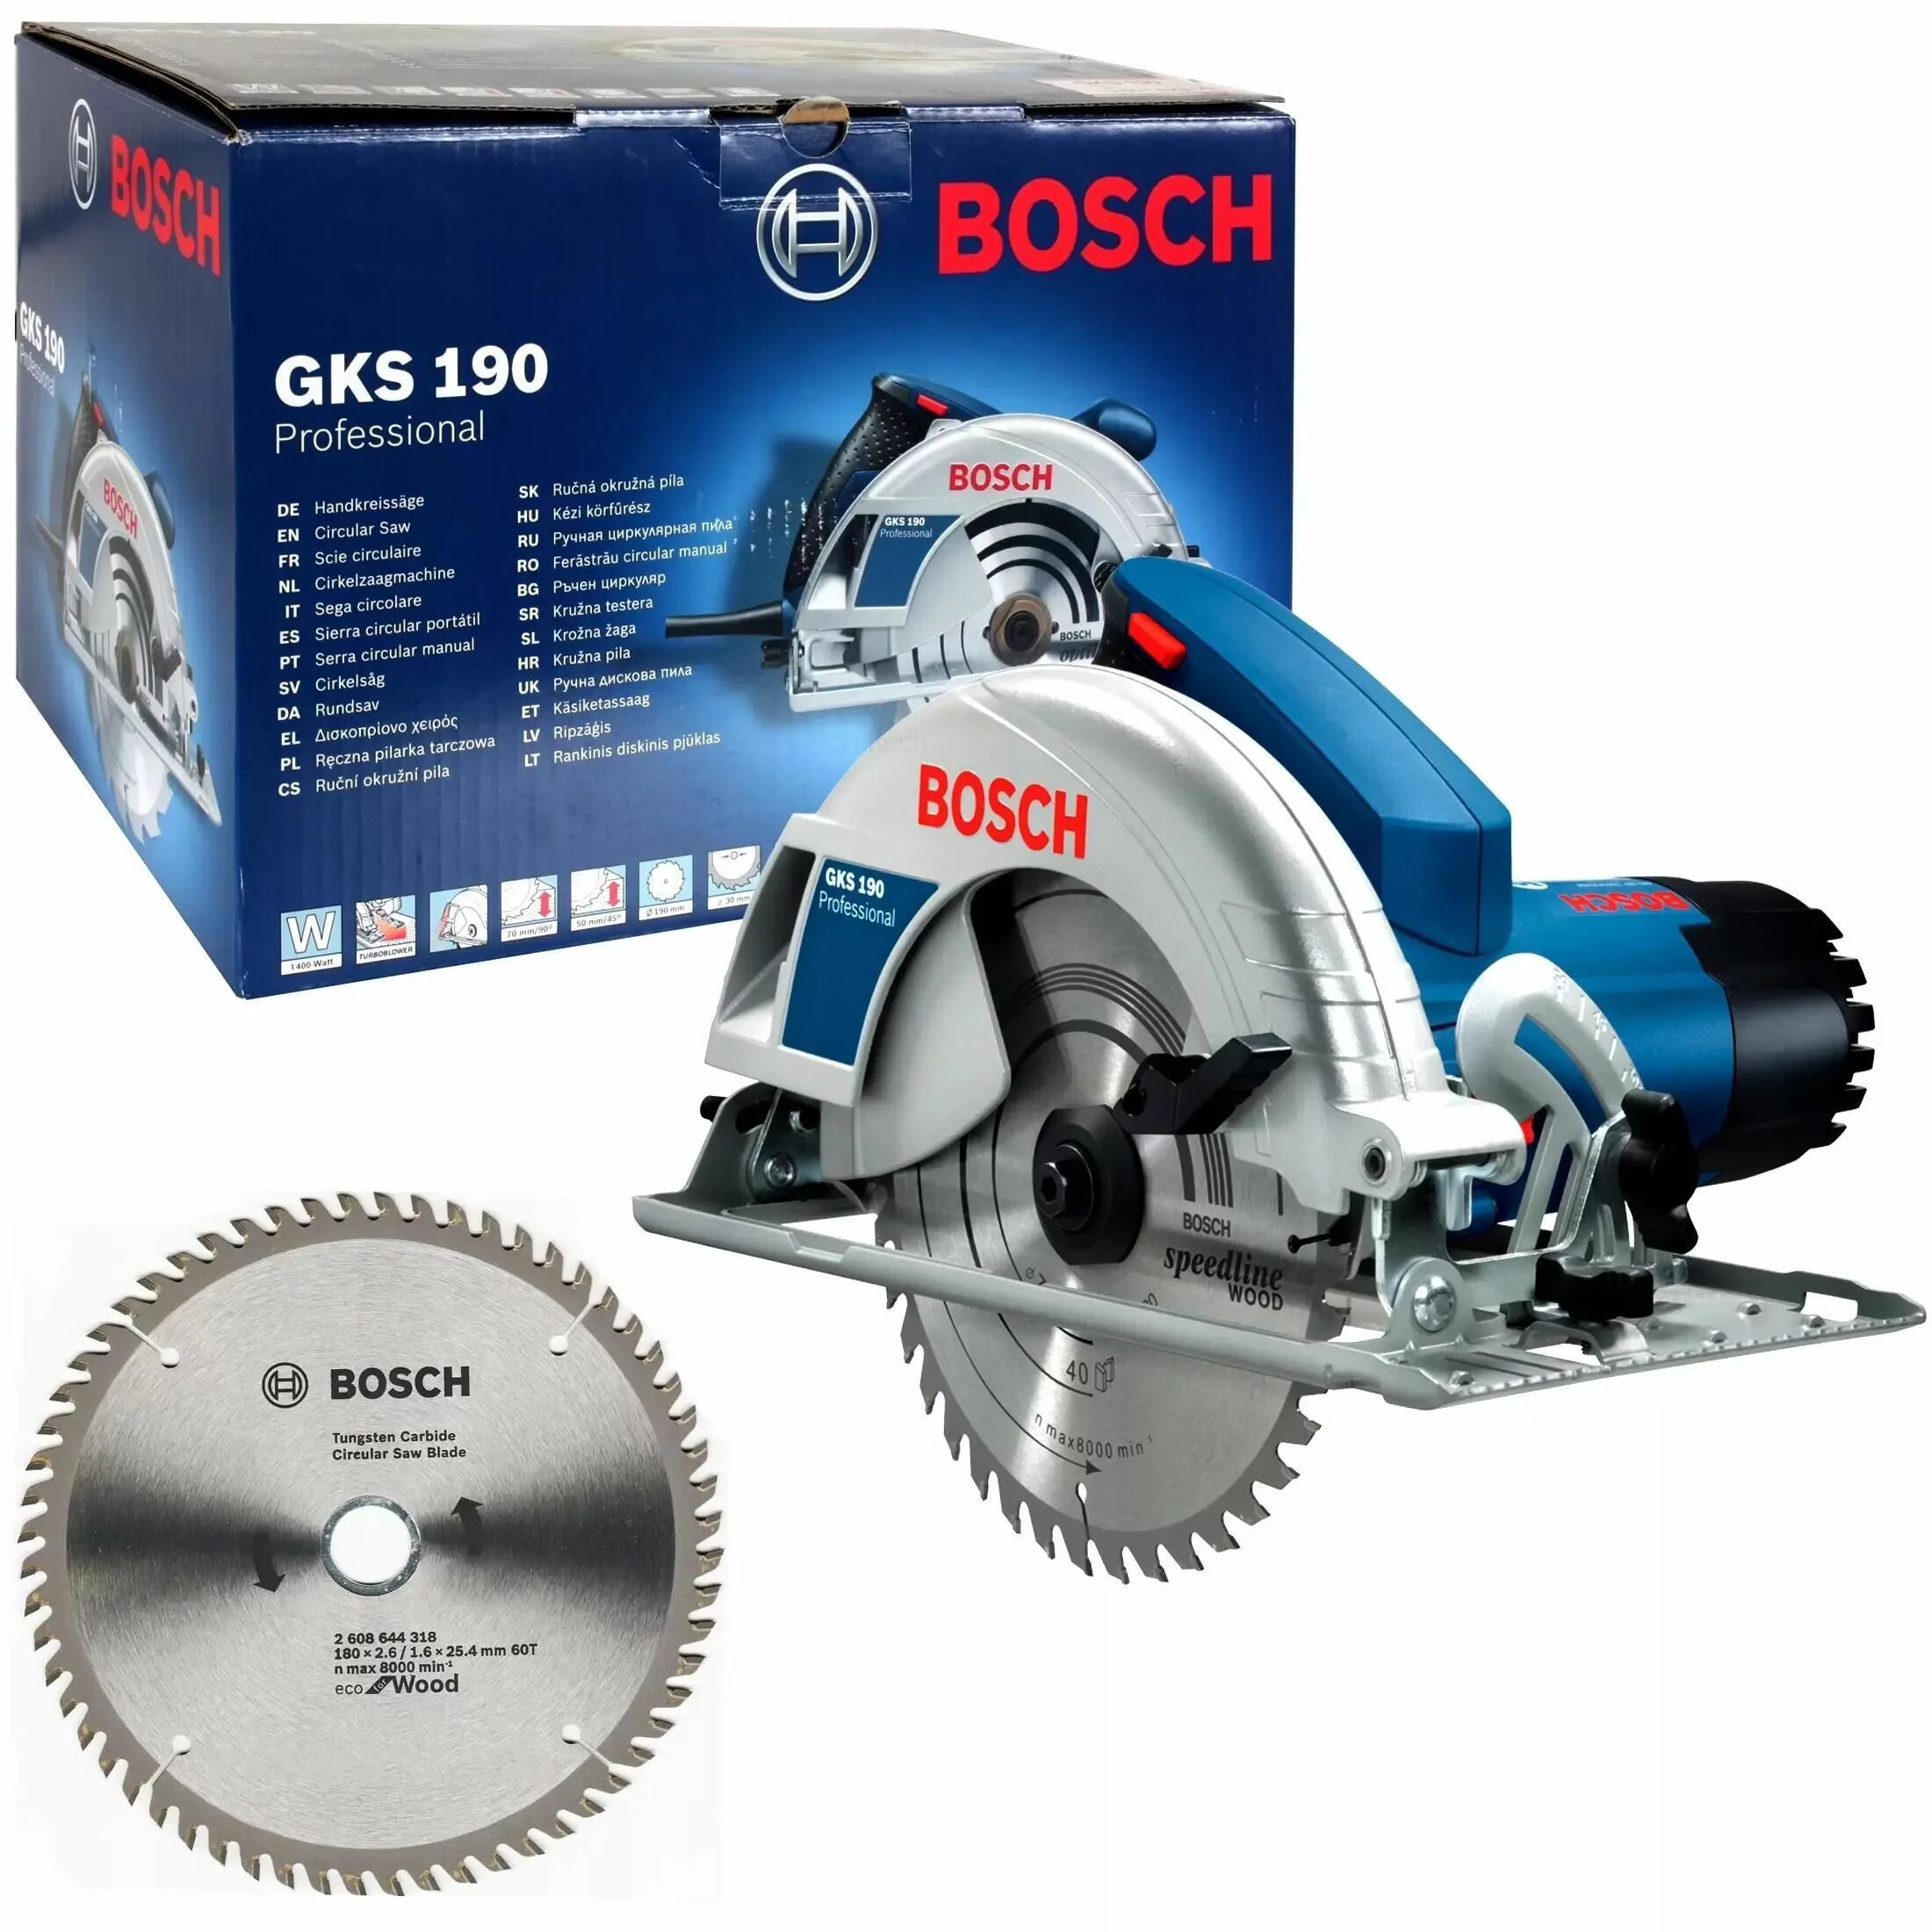 Bosch GKS 190. Диск для циркулярной пилы бош GKS 190. Bosch GKS 140 диаметр диска. Упор для пилы Bosch GKS 180-.